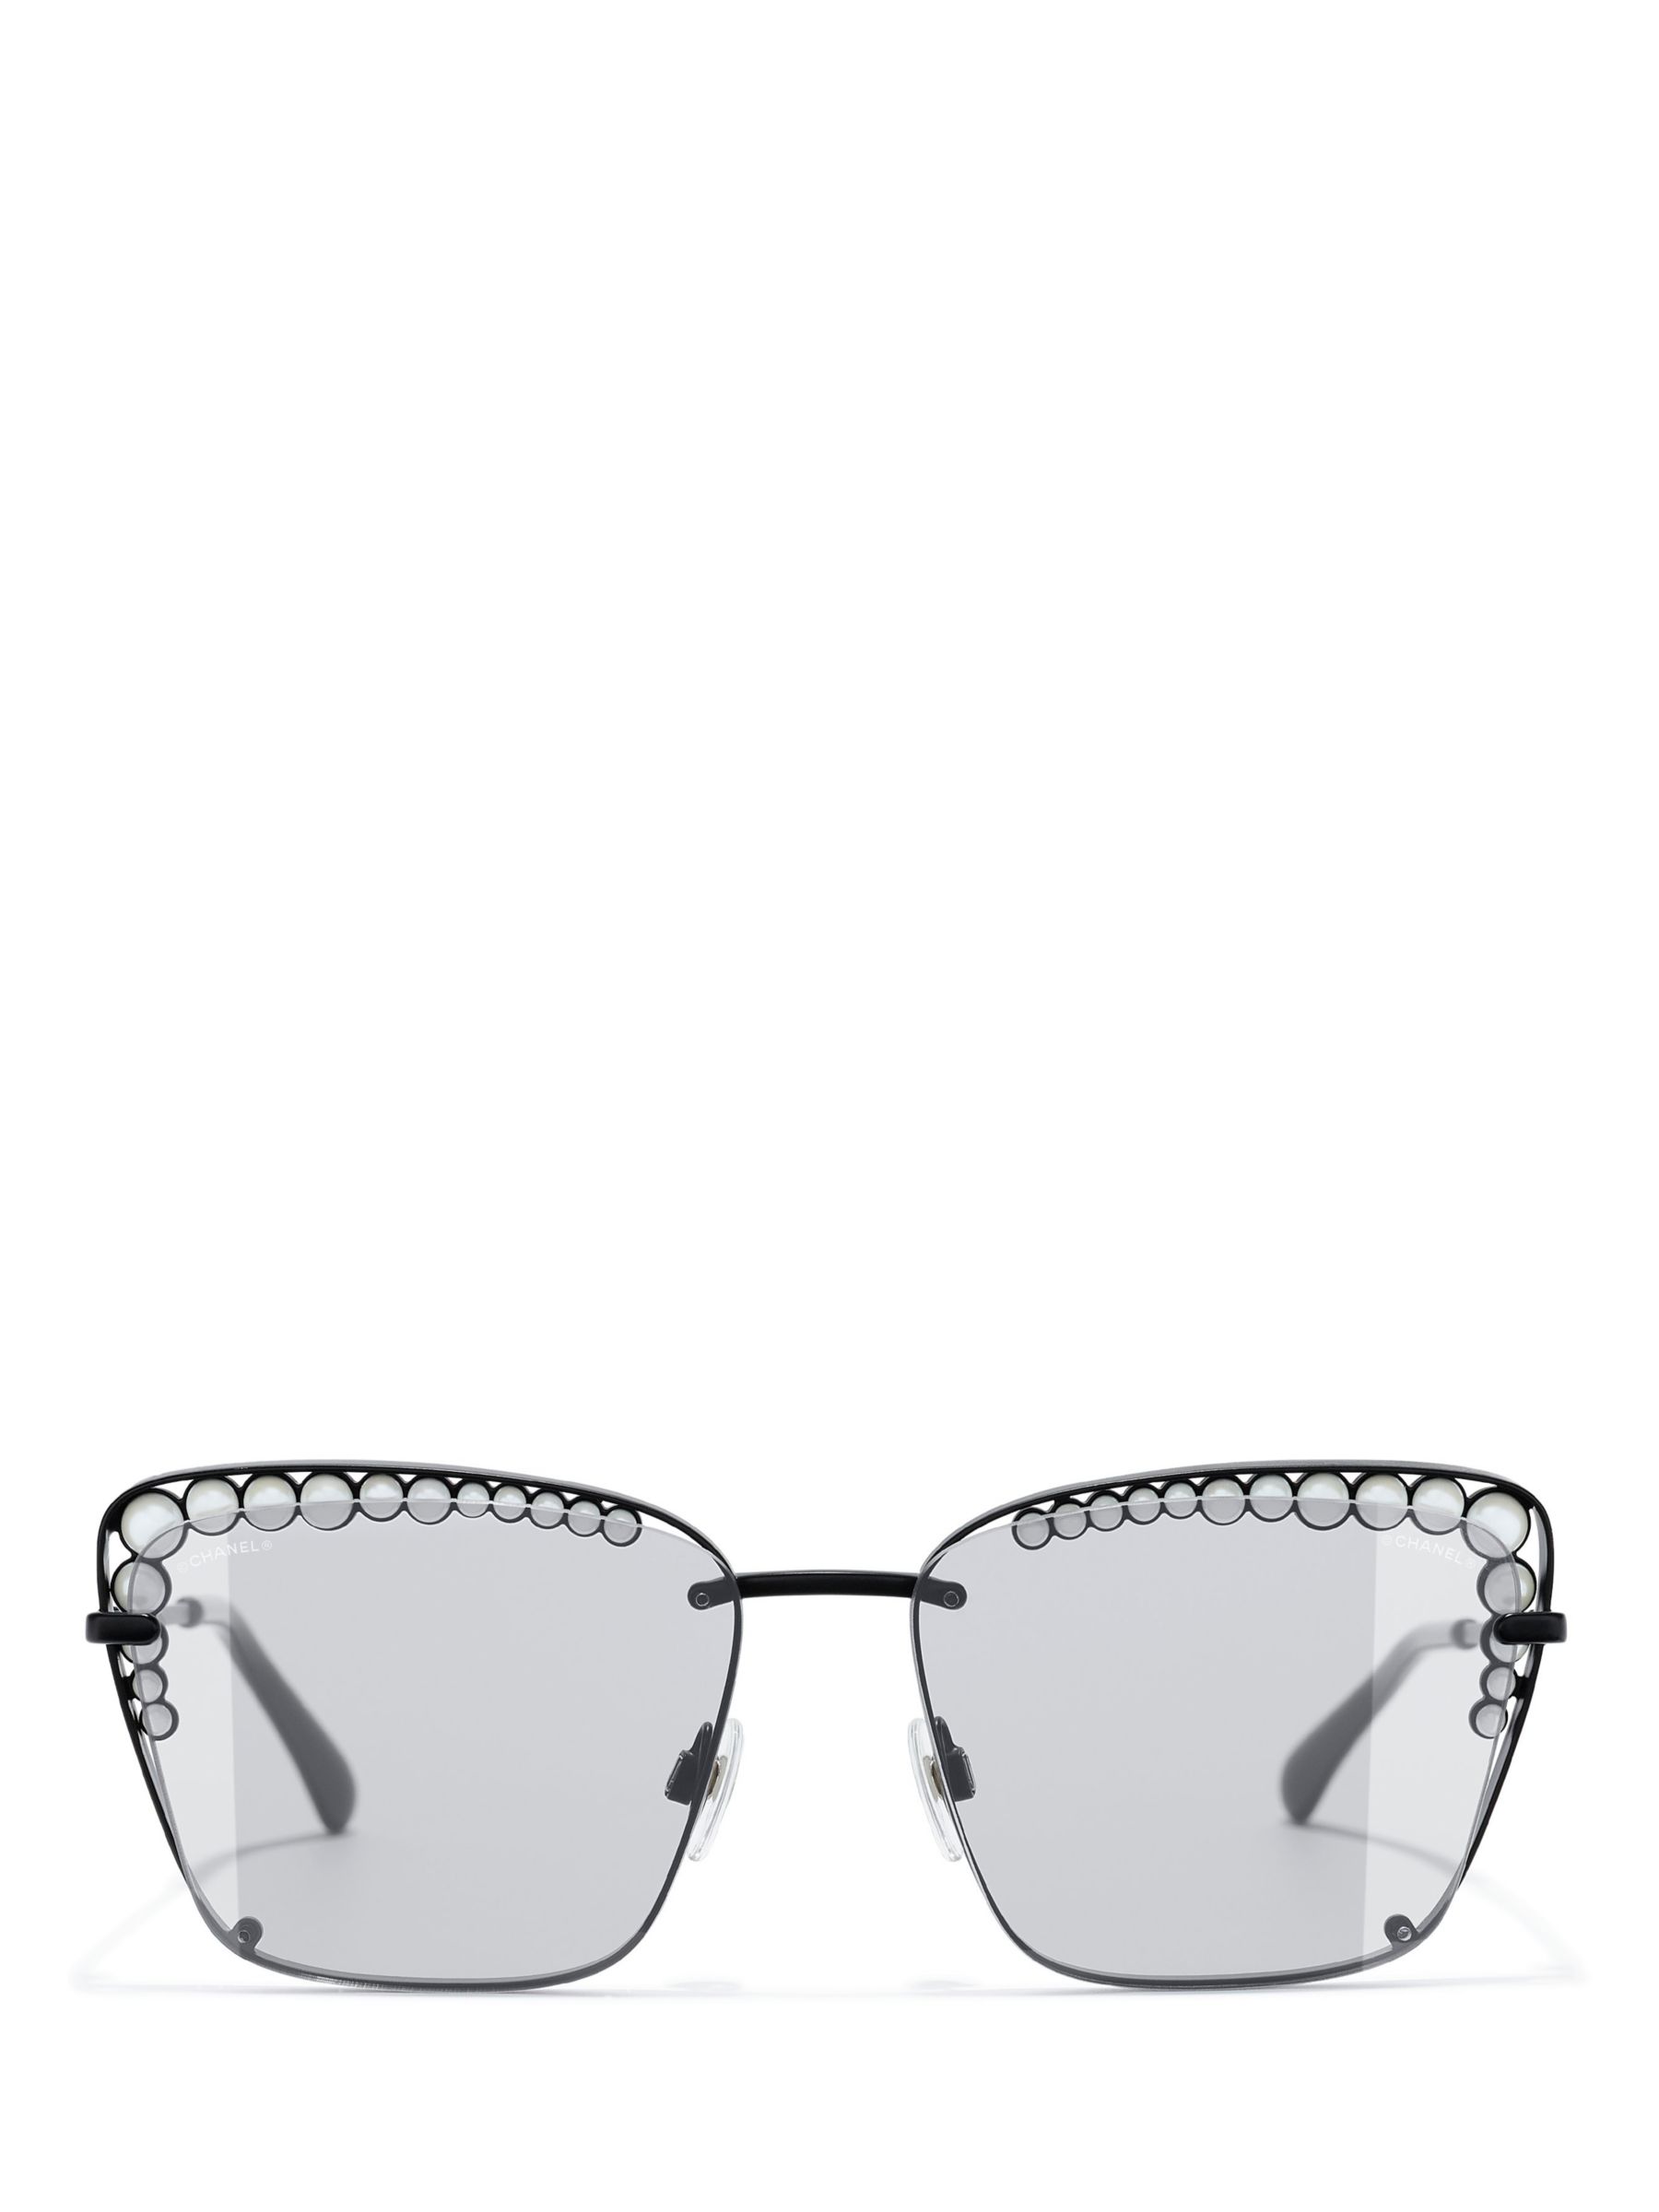 Chanel Square Sunglasses CH5487A 55 Grey & Black & Gold Polarised Sunglasses